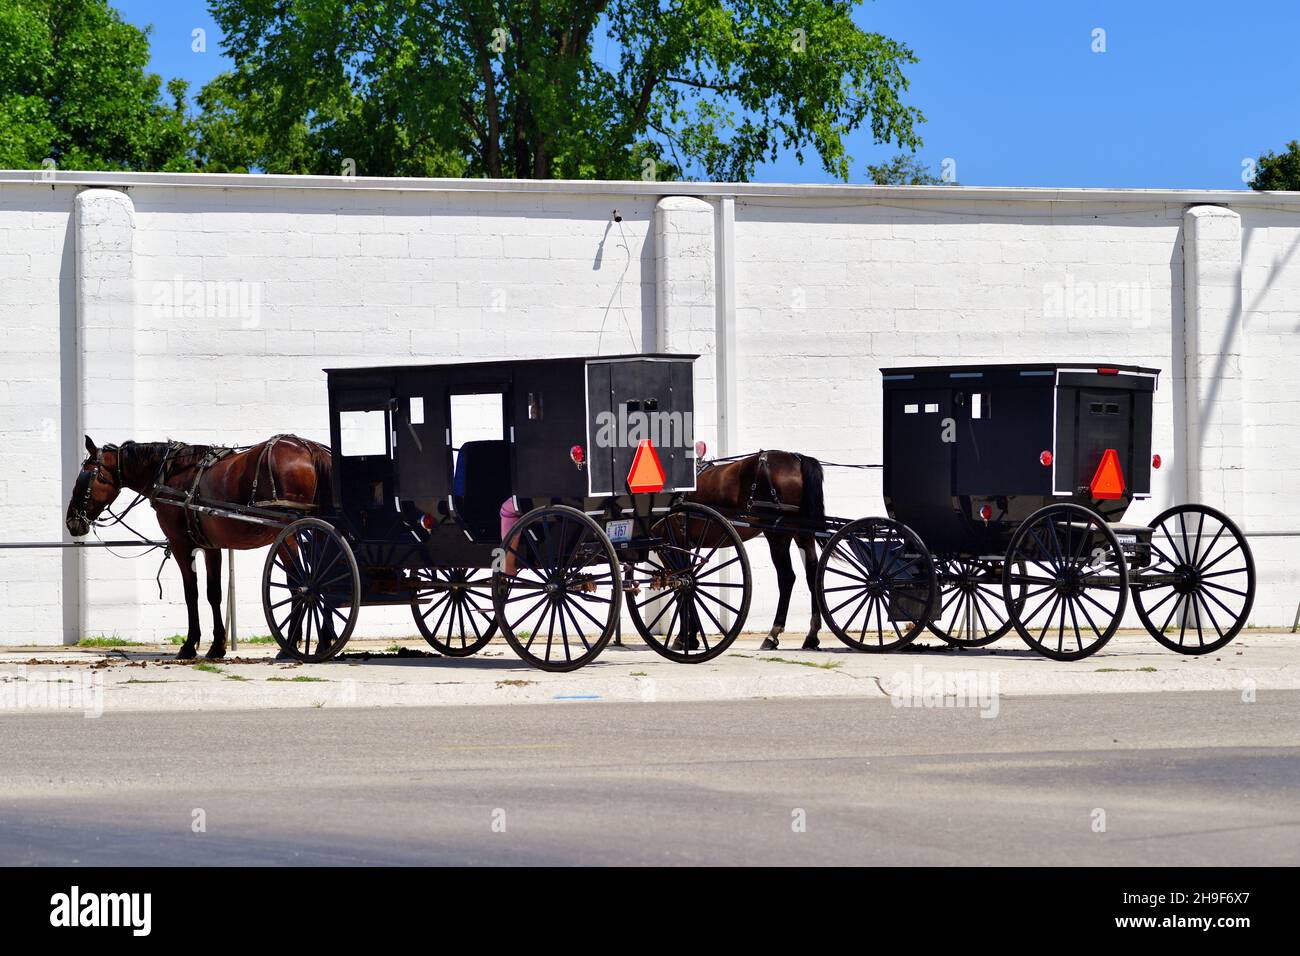 Lagrange, Indiana, États-Unis.Des calèches amish tirées par des chevaux ou des buggies liées à un poste d'attelage attendent leur propriétaire à l'extérieur d'un magasin. Banque D'Images